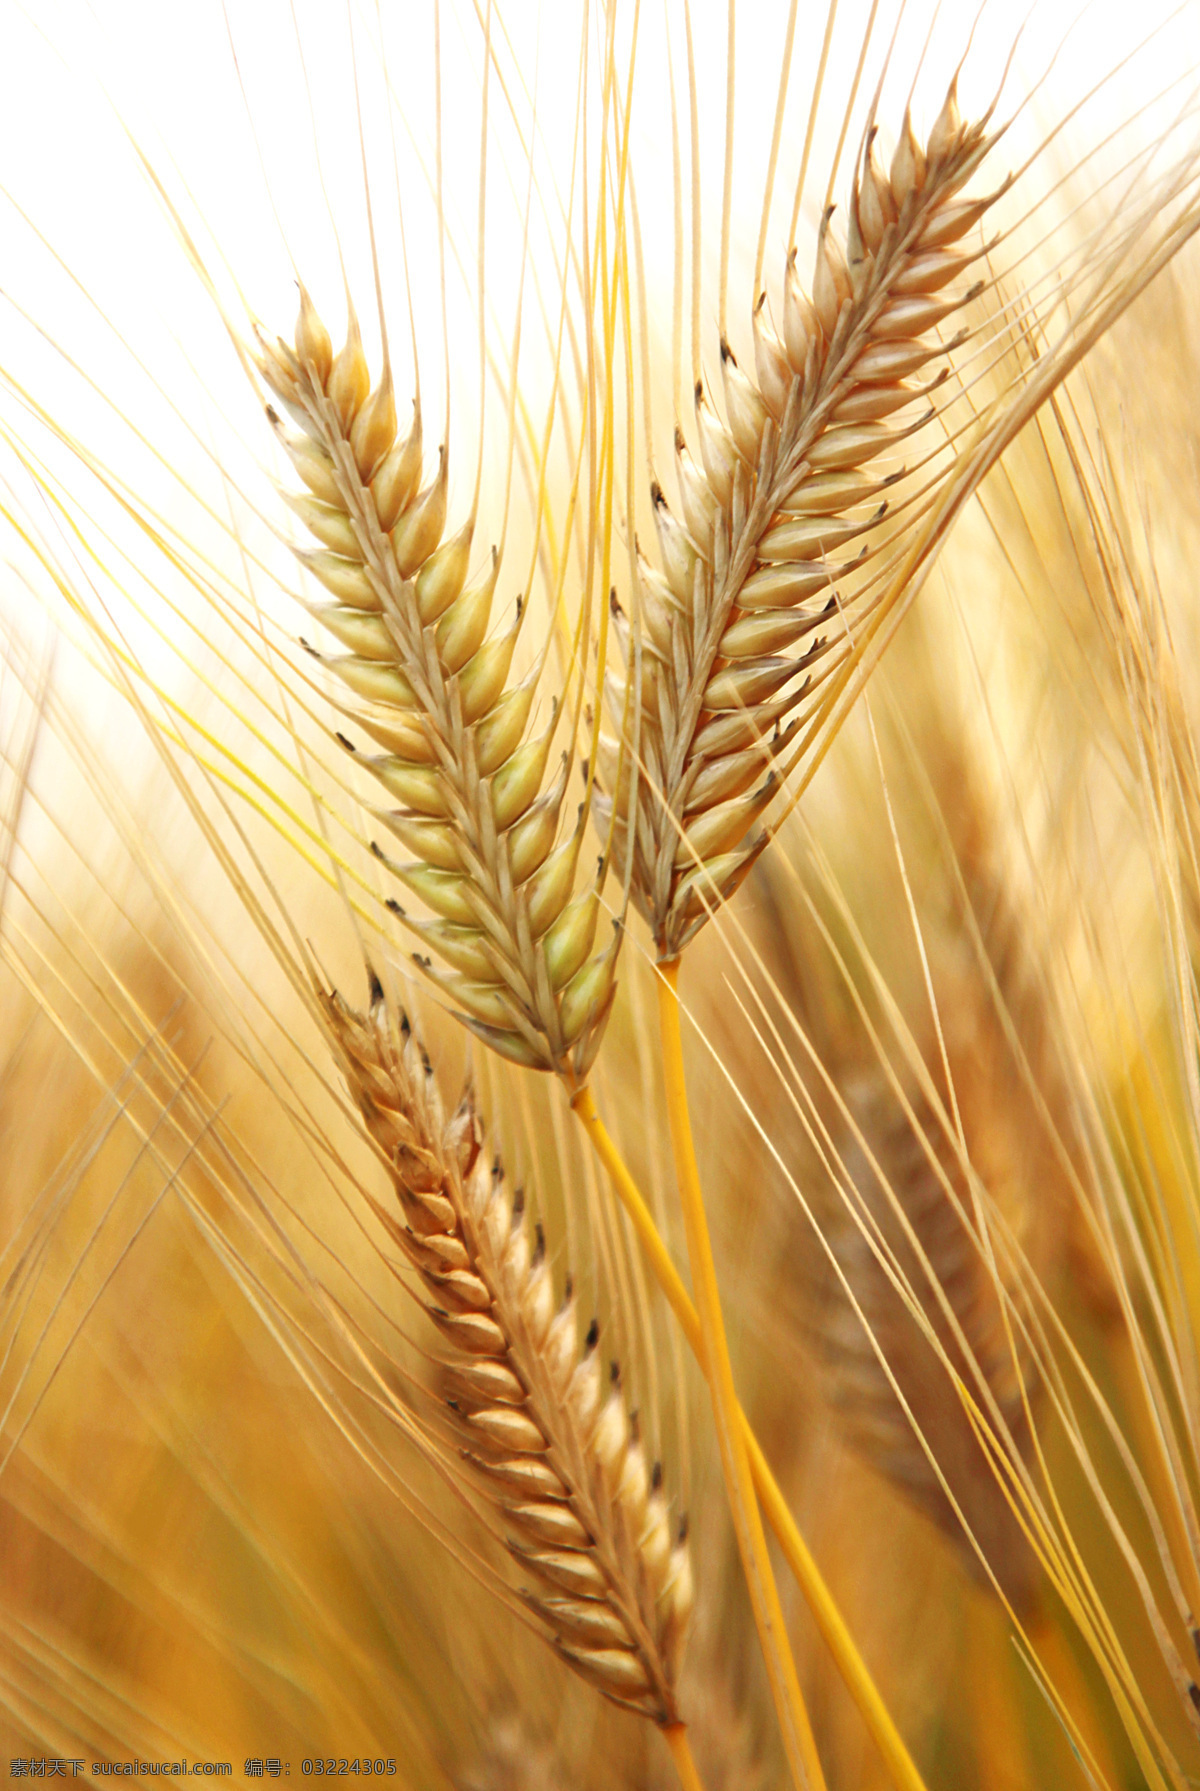 小麦 麦穗 麦子 麦芒 粮食 农业 生产 种植 植物 收获 夏收 收割 农田 农村 田园风光 自然景观